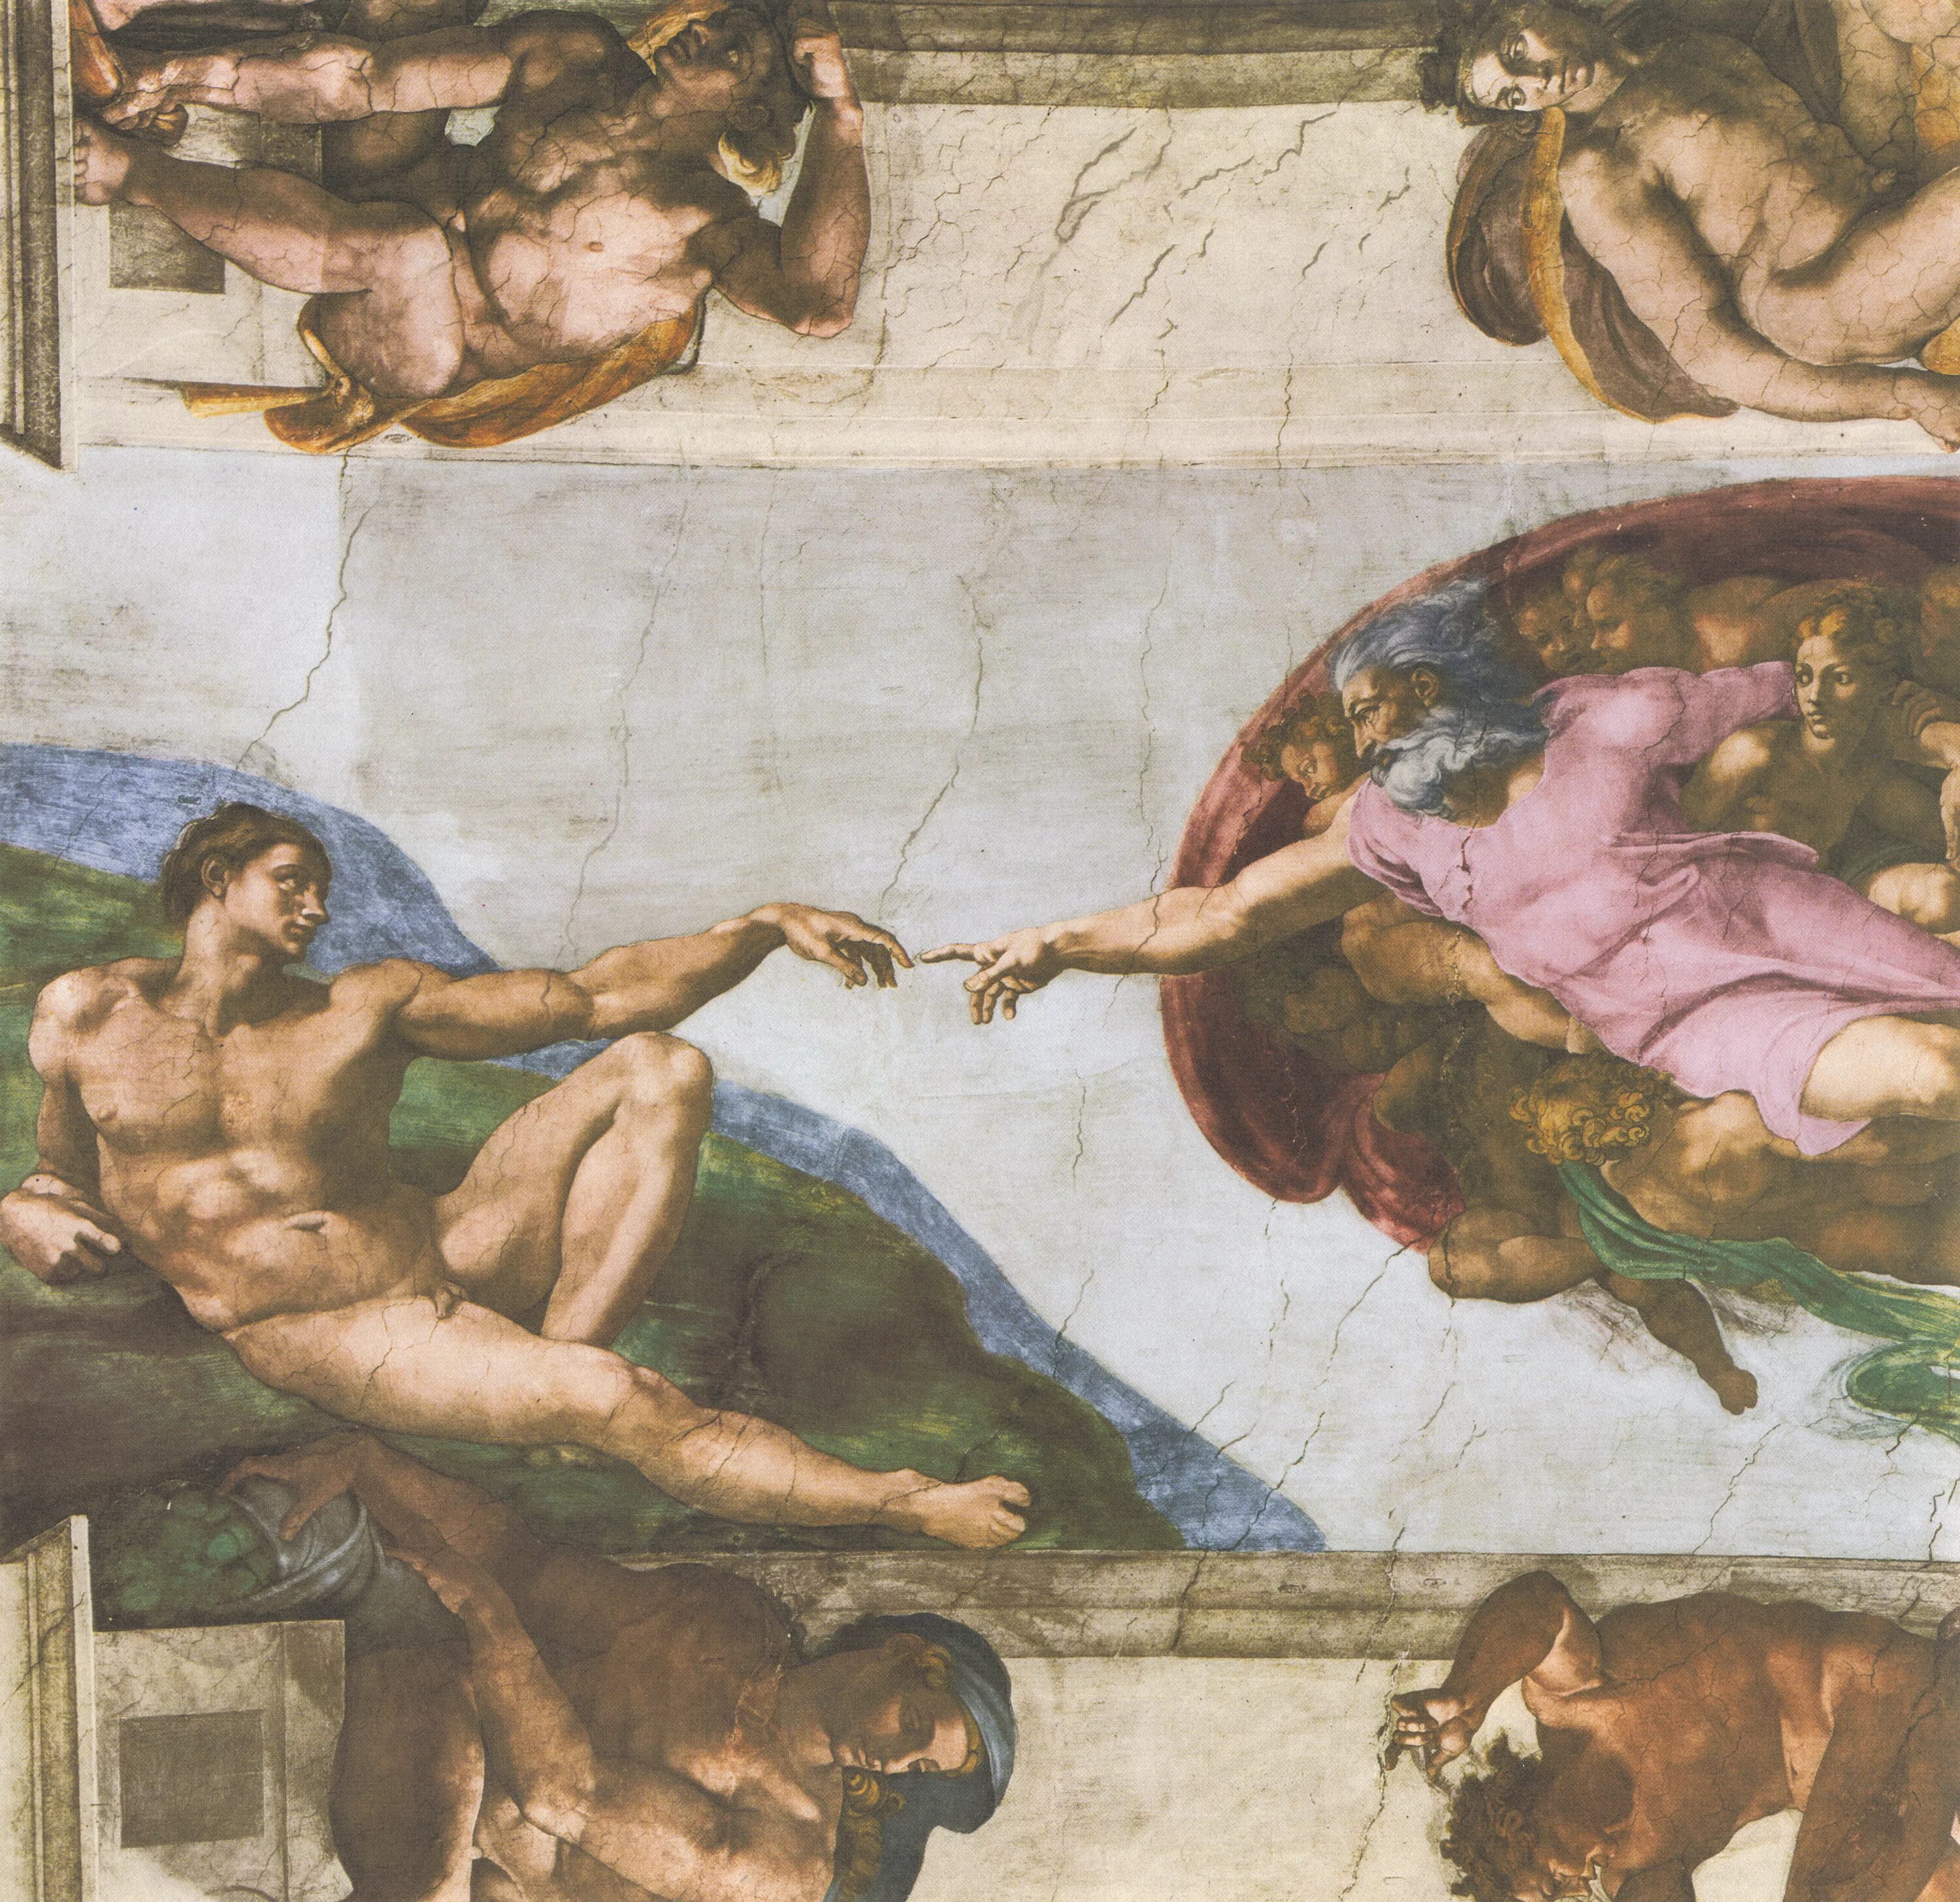 Микеланджело фрески Сикстинской капеллы. Микеланджело потолок Сикстинской капеллы ФРАГМЕНТЫ. Фреска на потолке Сикстинской капеллы.